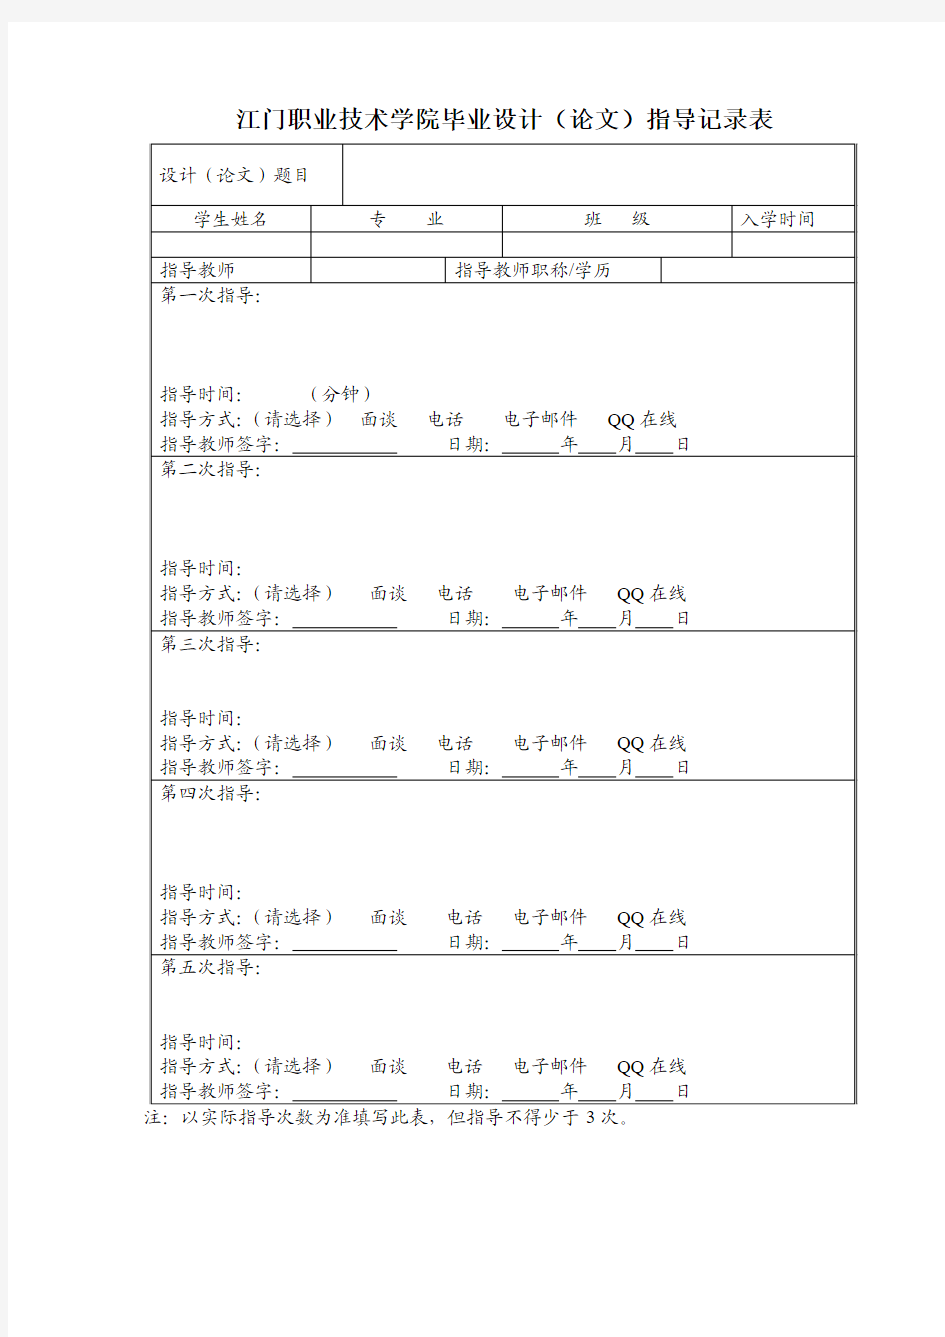 江门职业技术学院毕业设计(论文)指导记录表